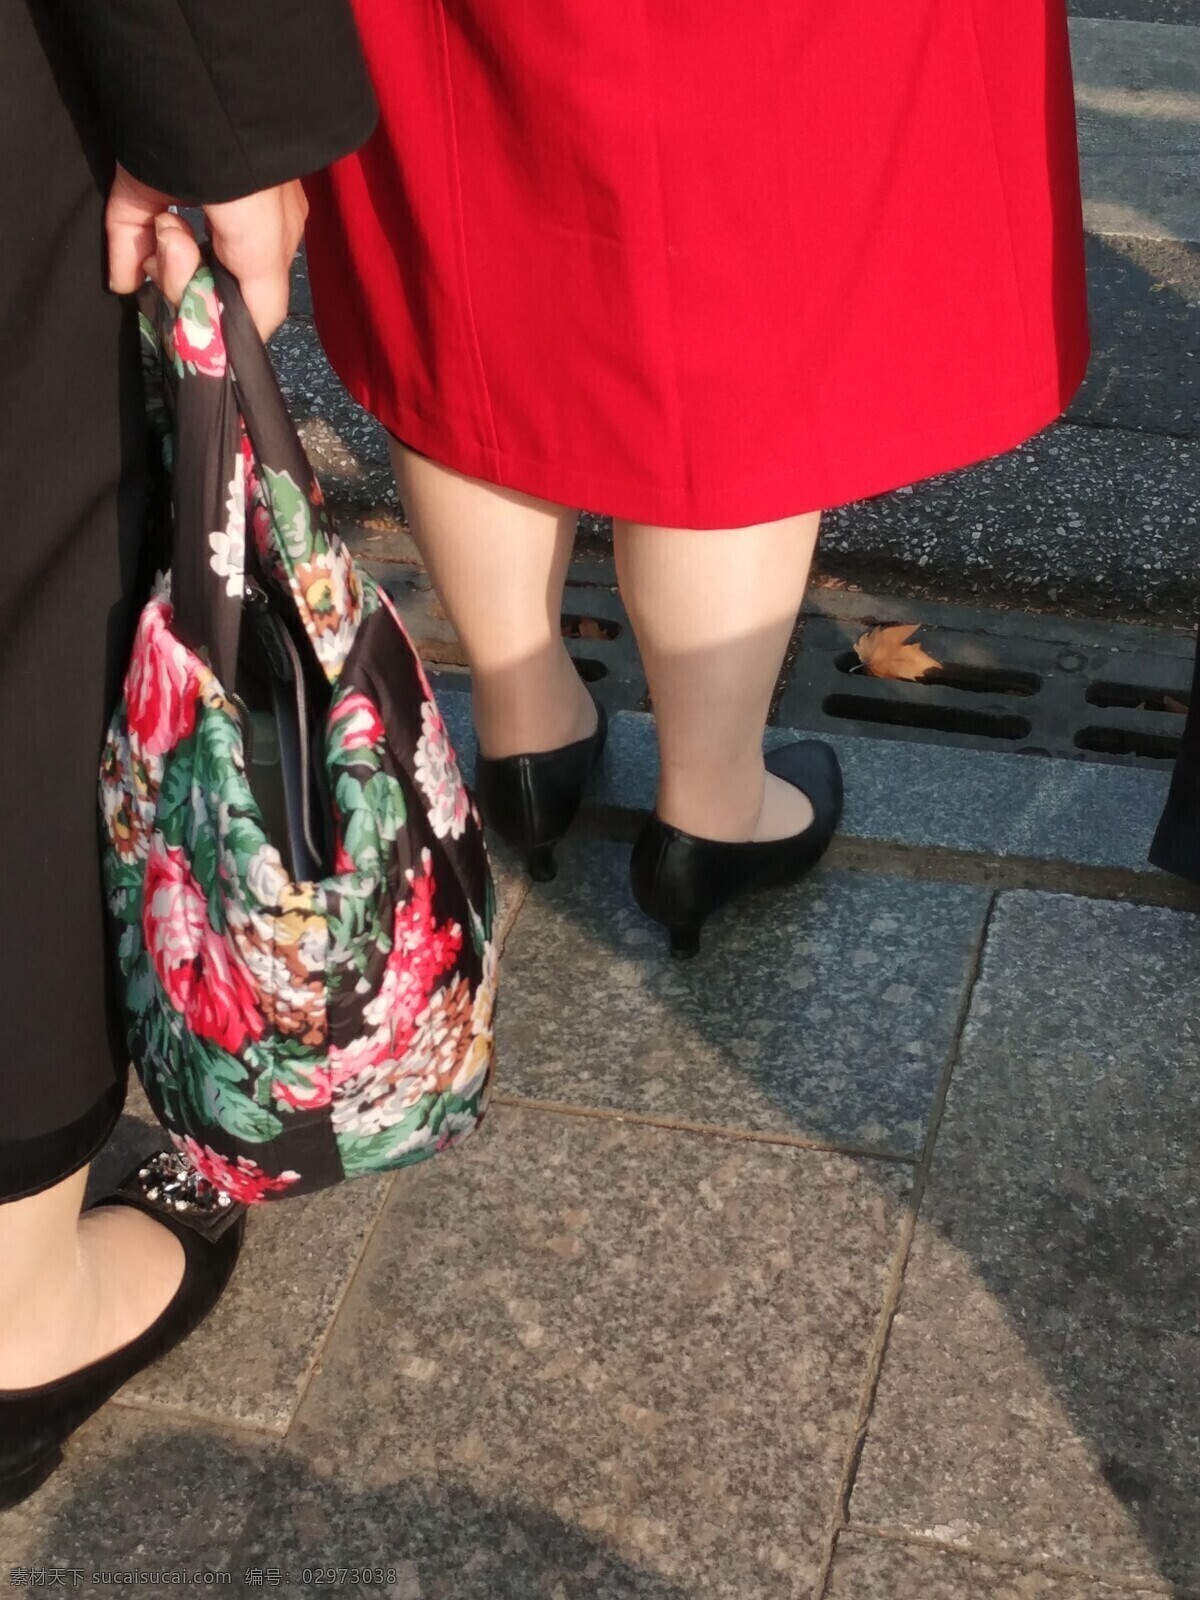 美腿丝袜 女人腿 美腿 高跟鞋 红裙 裙子 丝袜 肉色丝袜 街头高跟 人物图库 女性女人